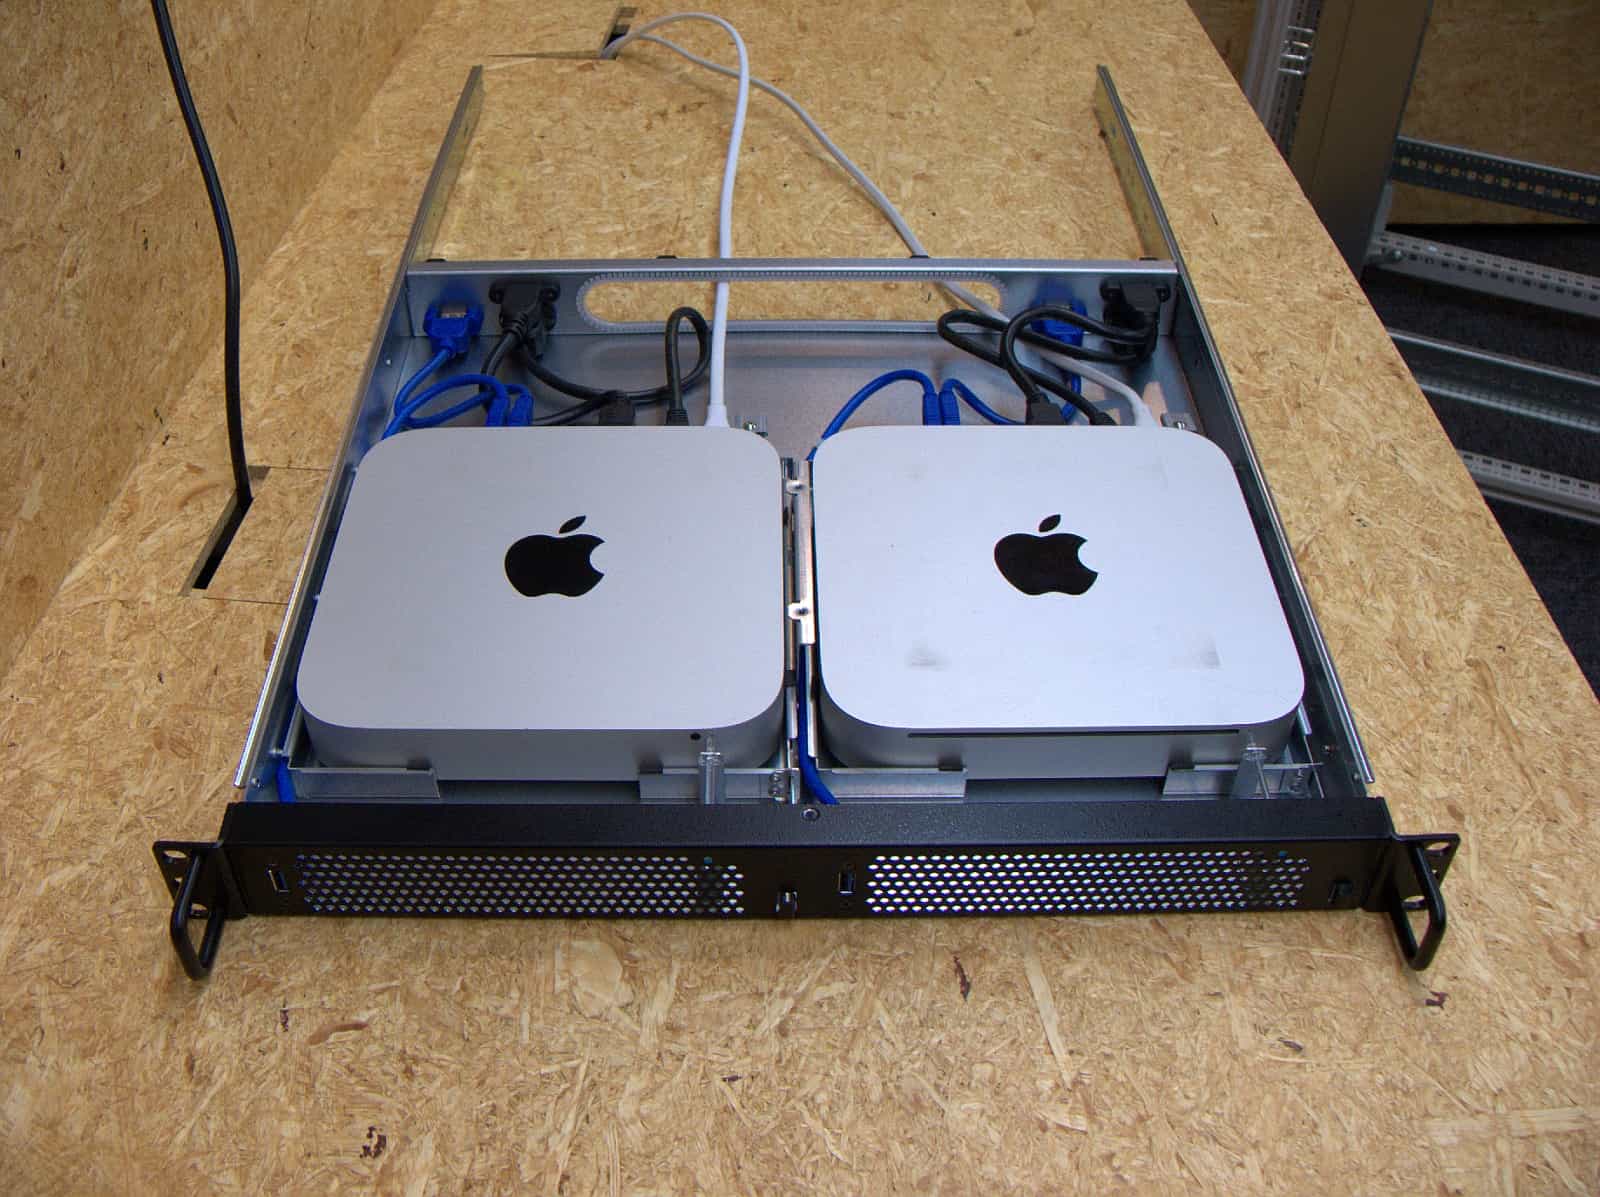 Mac miniをラックマウントできるケース「1URack2Mini」を、ラックに ...